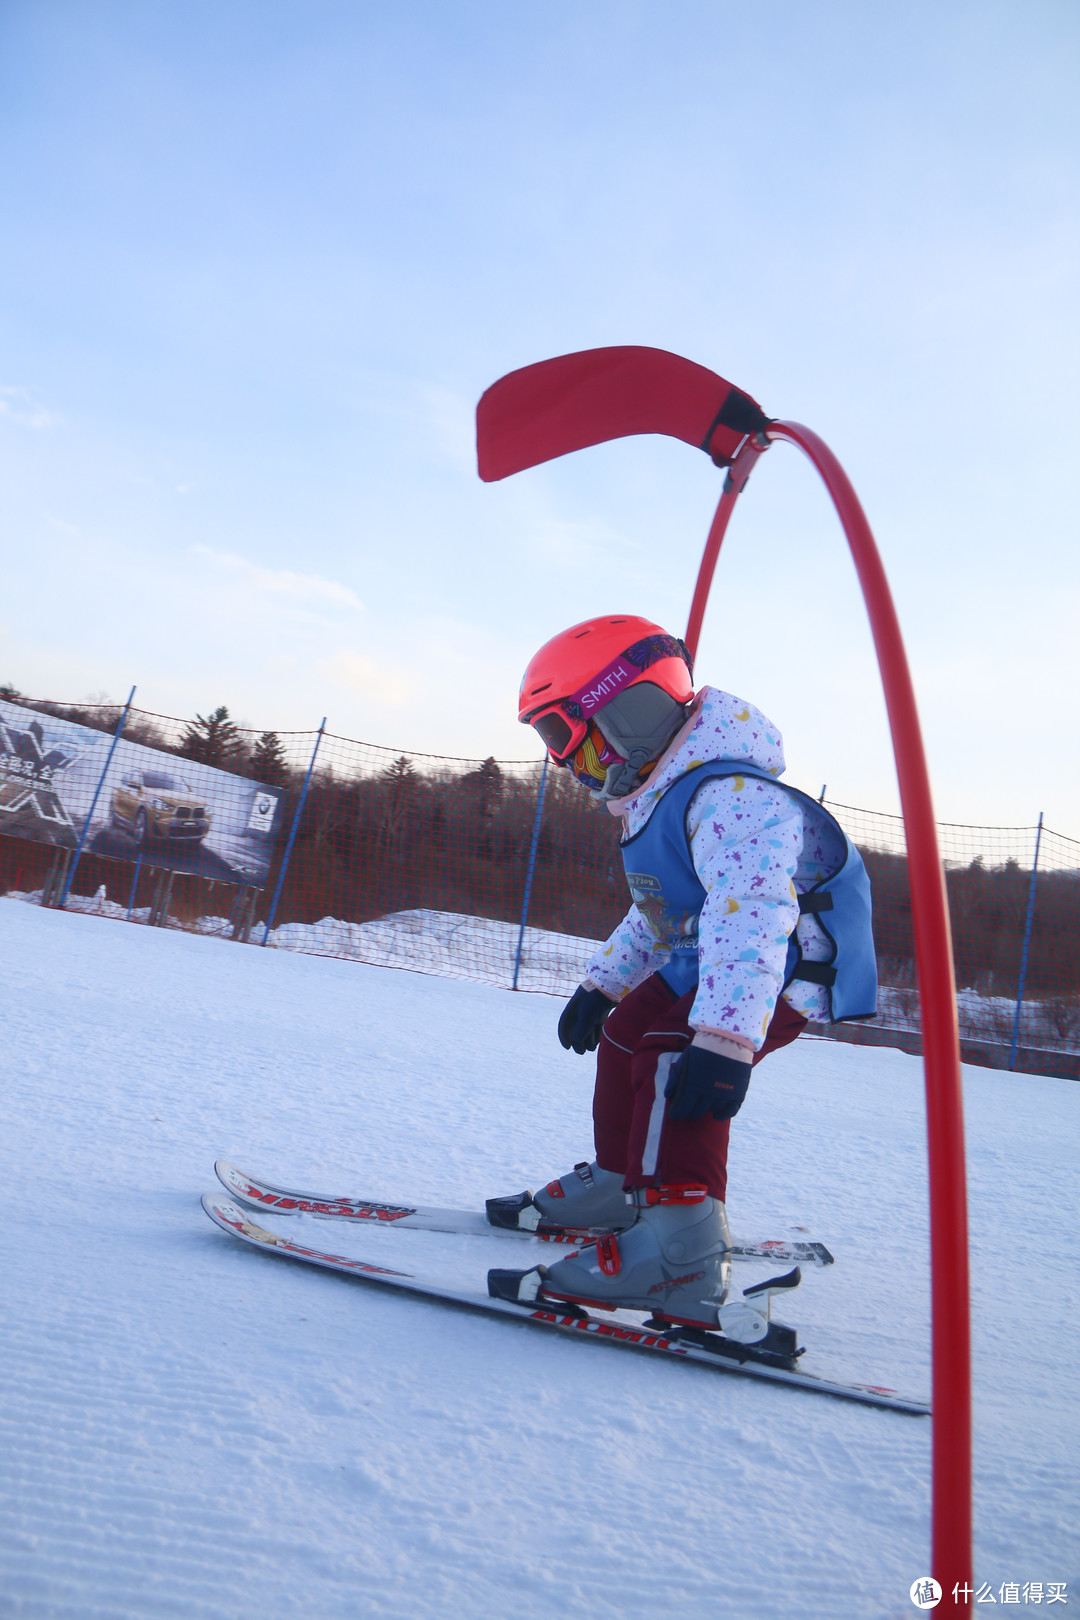 20-21年雪季|亚布力Club Med滑雪度假村行动指南